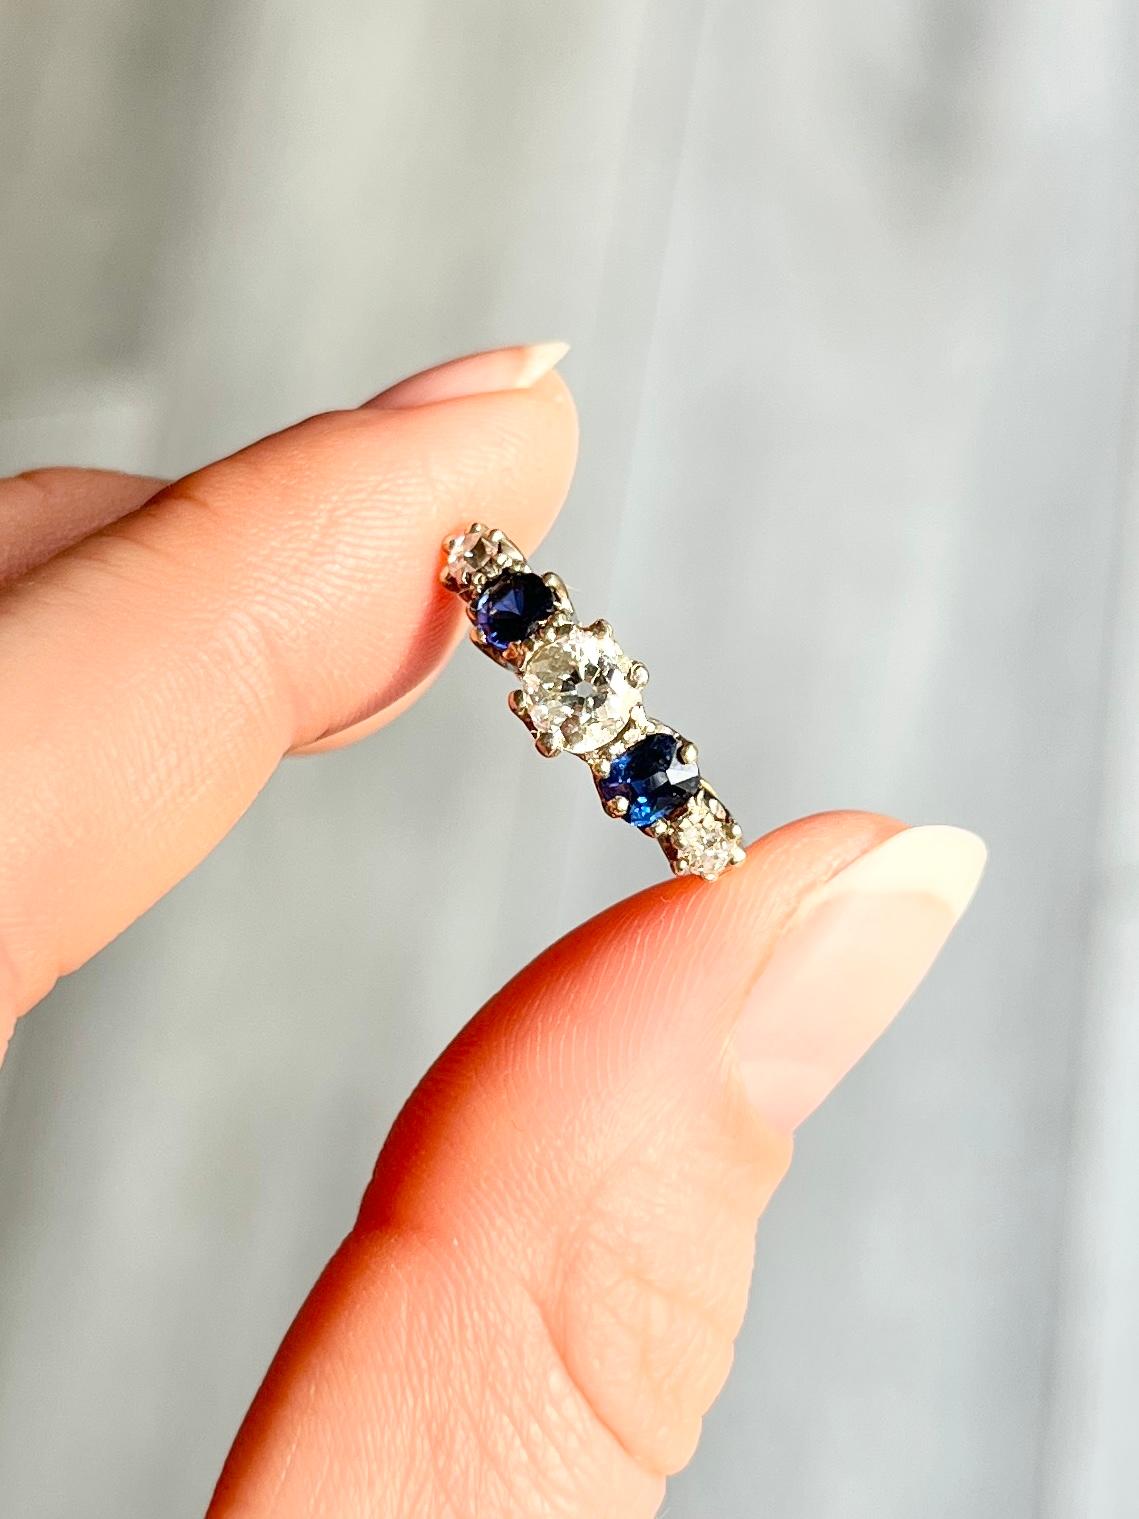 Dieser wunderschöne Ring enthält zwei tiefblaue Saphire von je 25 pt. und drei Diamanten. Der zentrale Diamant misst 50 Pence und die kleineren Diamanten jeweils 7 Pence. Der Ring ist aus 18-karätigem Gold modelliert und die Steine sind in Platin